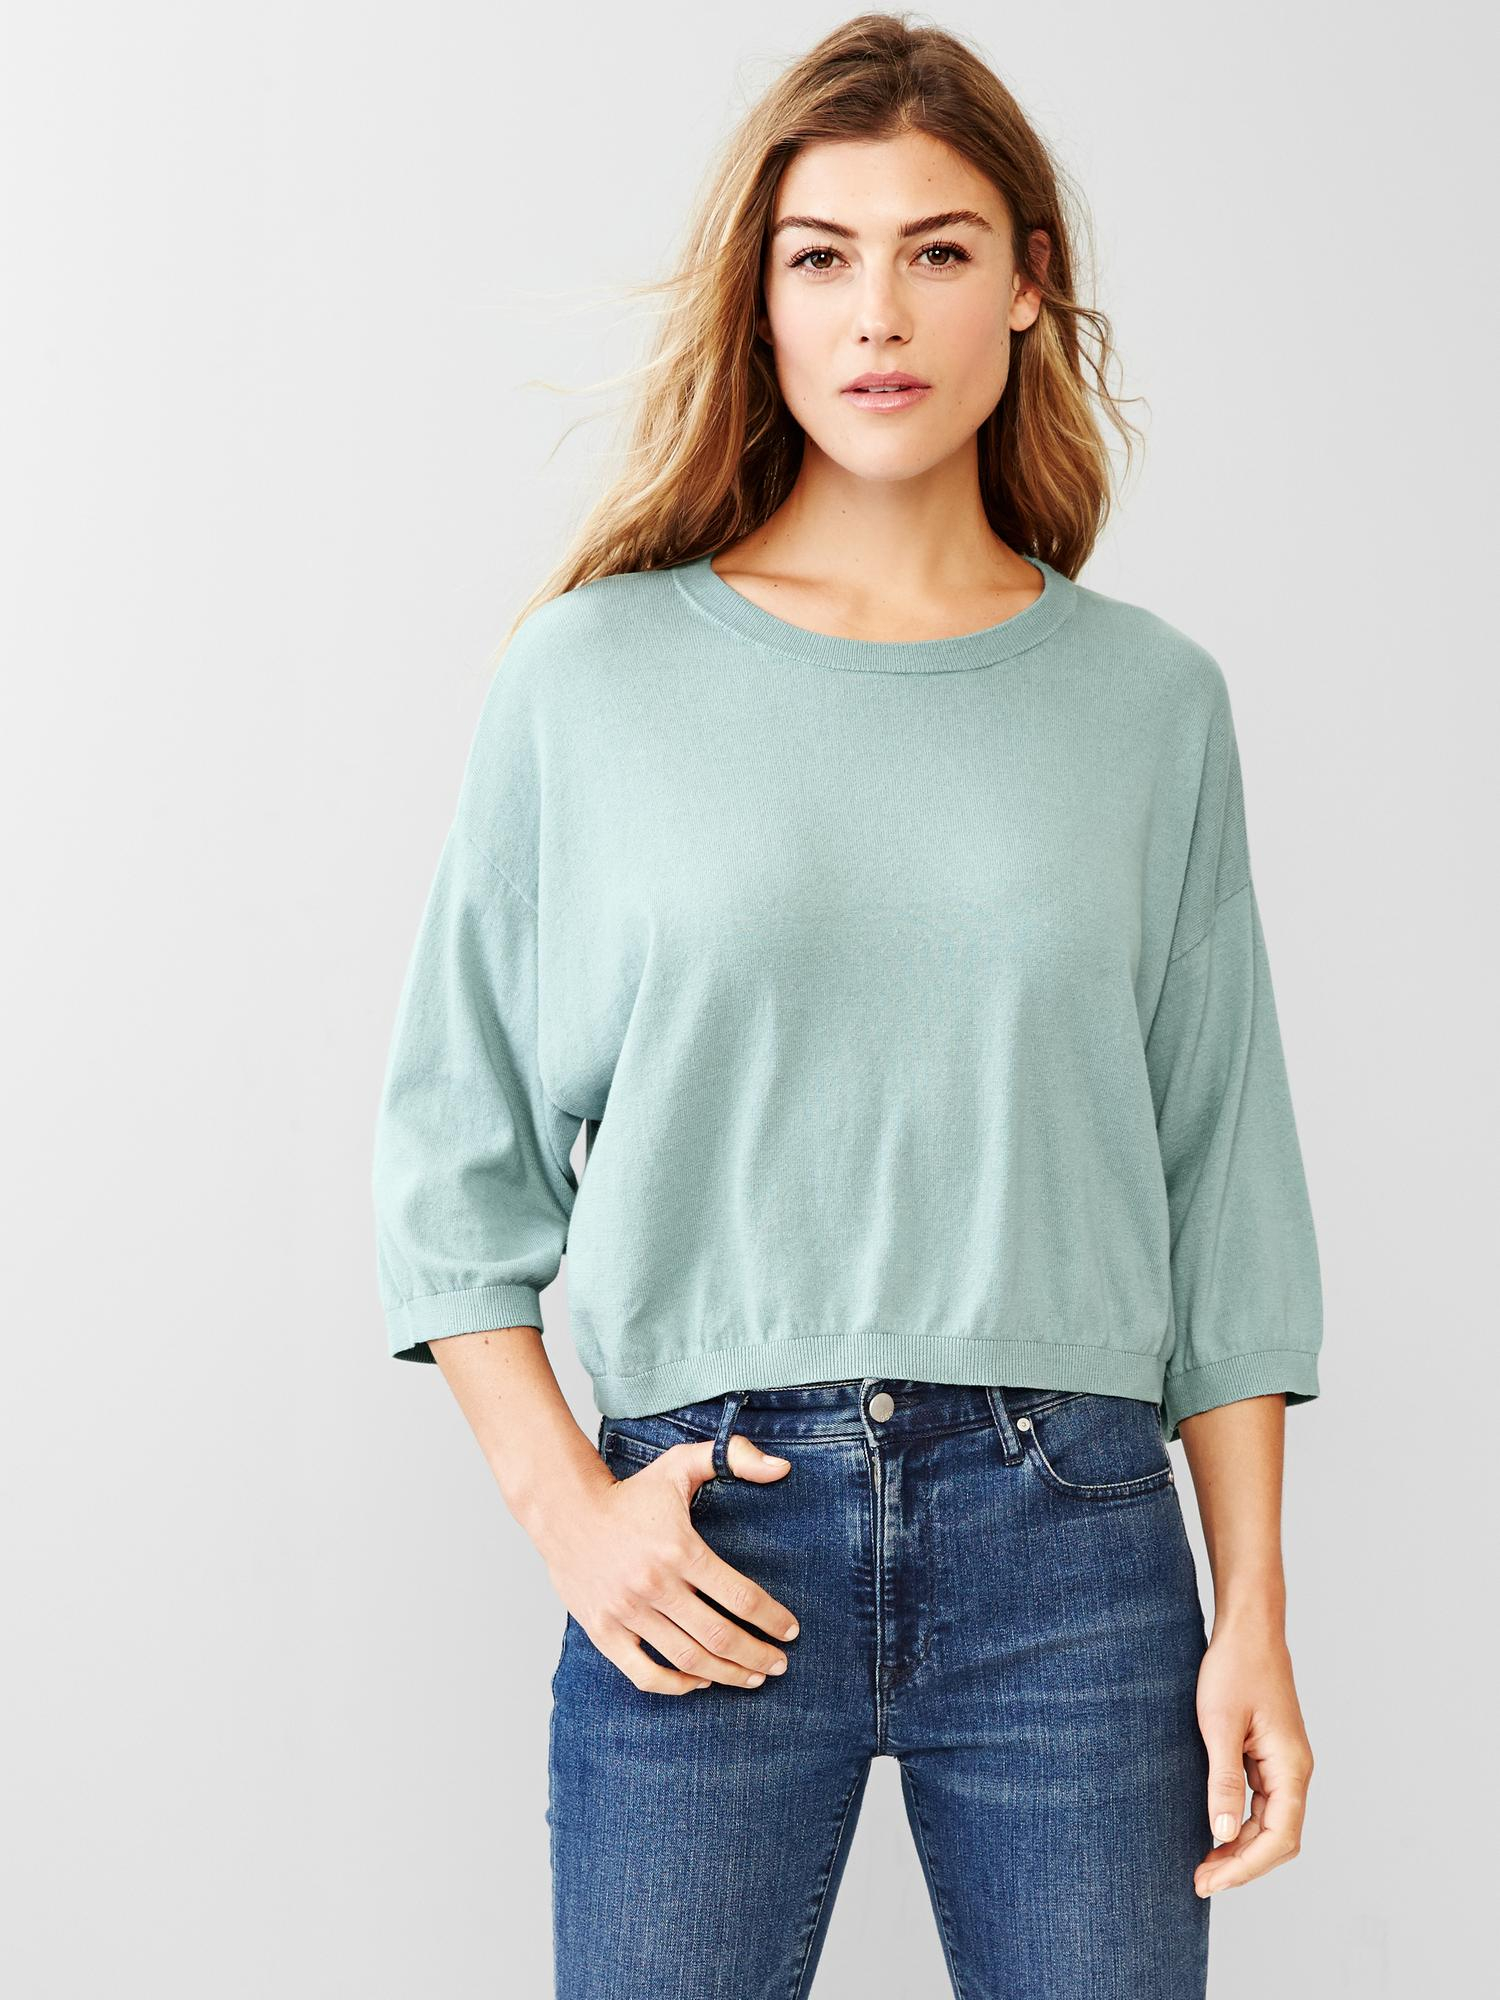 gap ladies sweater